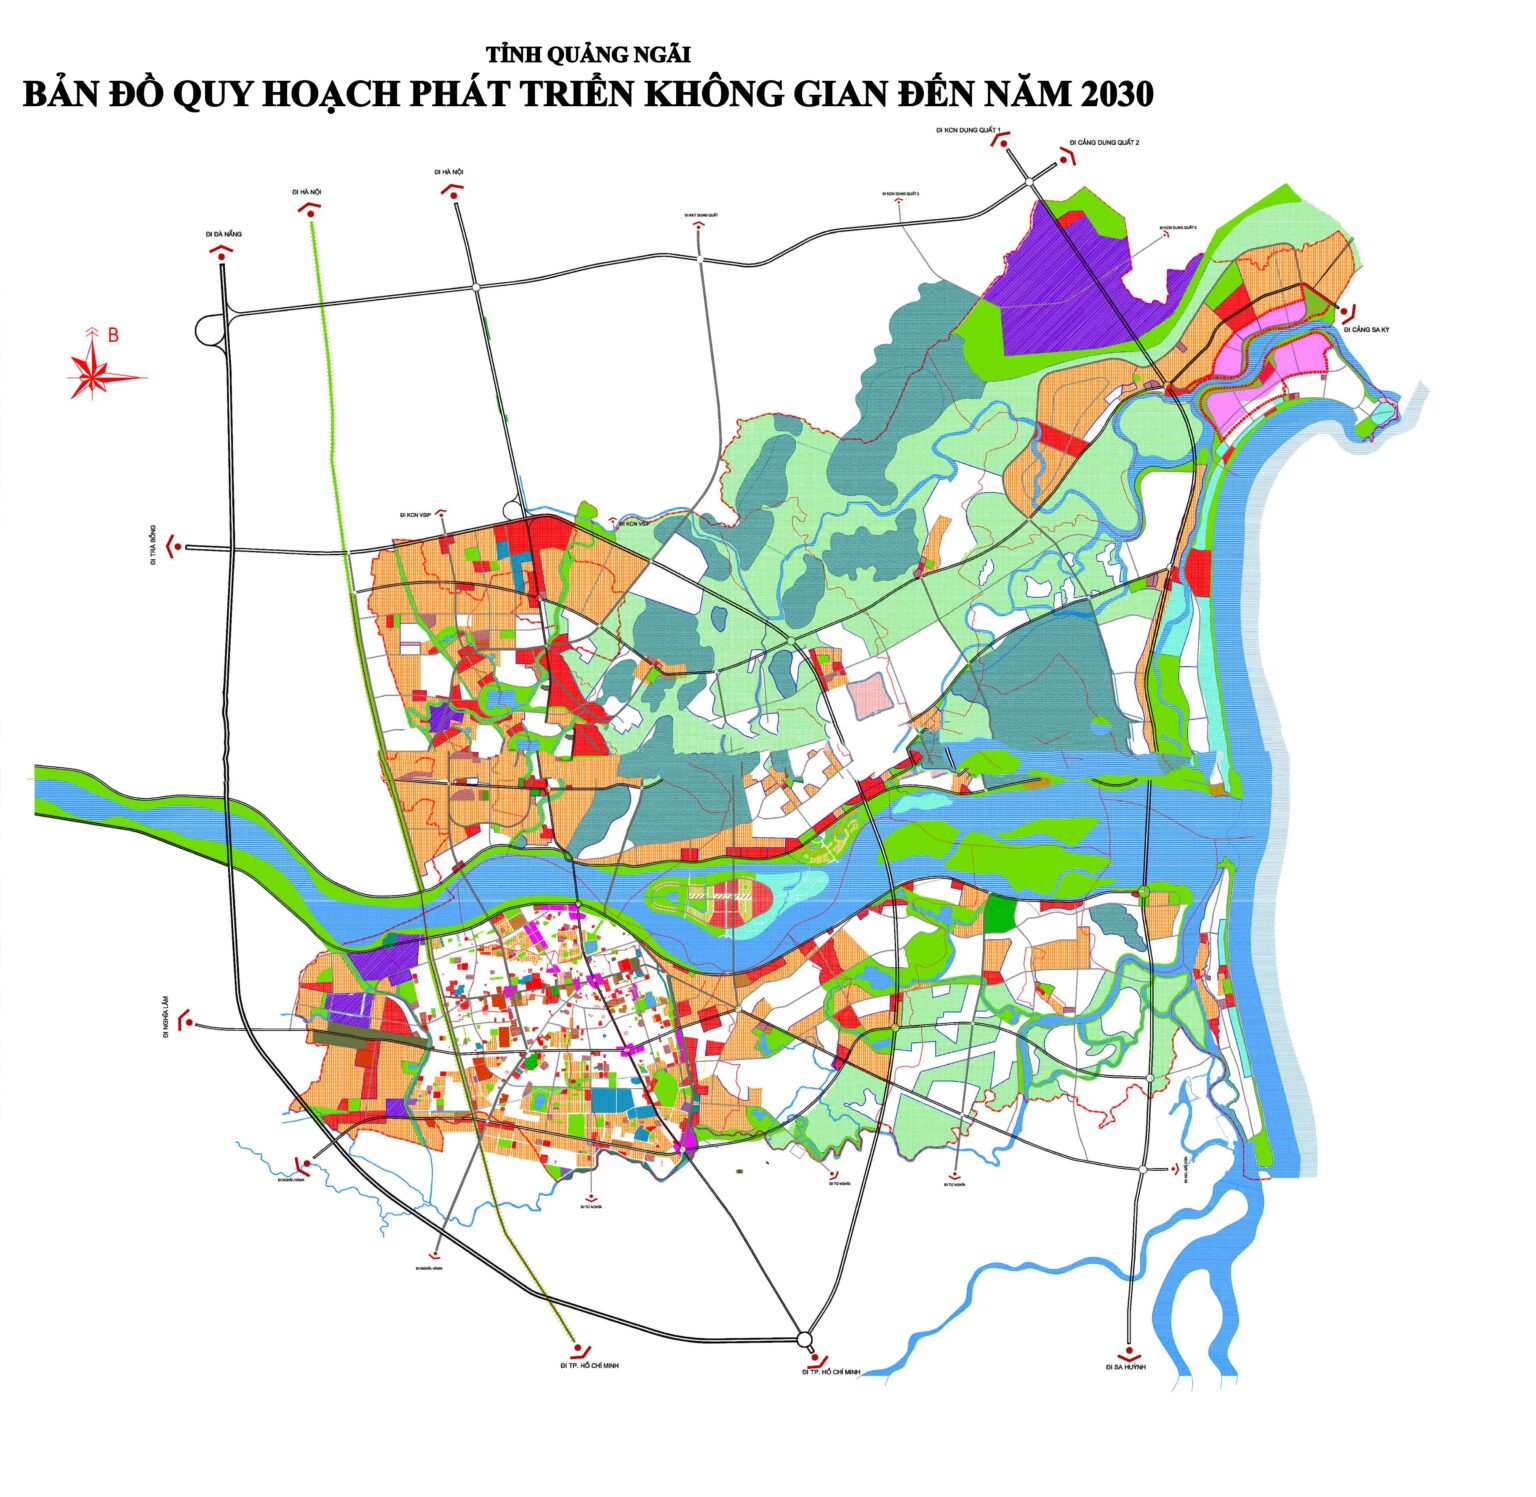 Bản đồ quy hoạch phát triển không gian tỉnh Quảng Ngãi